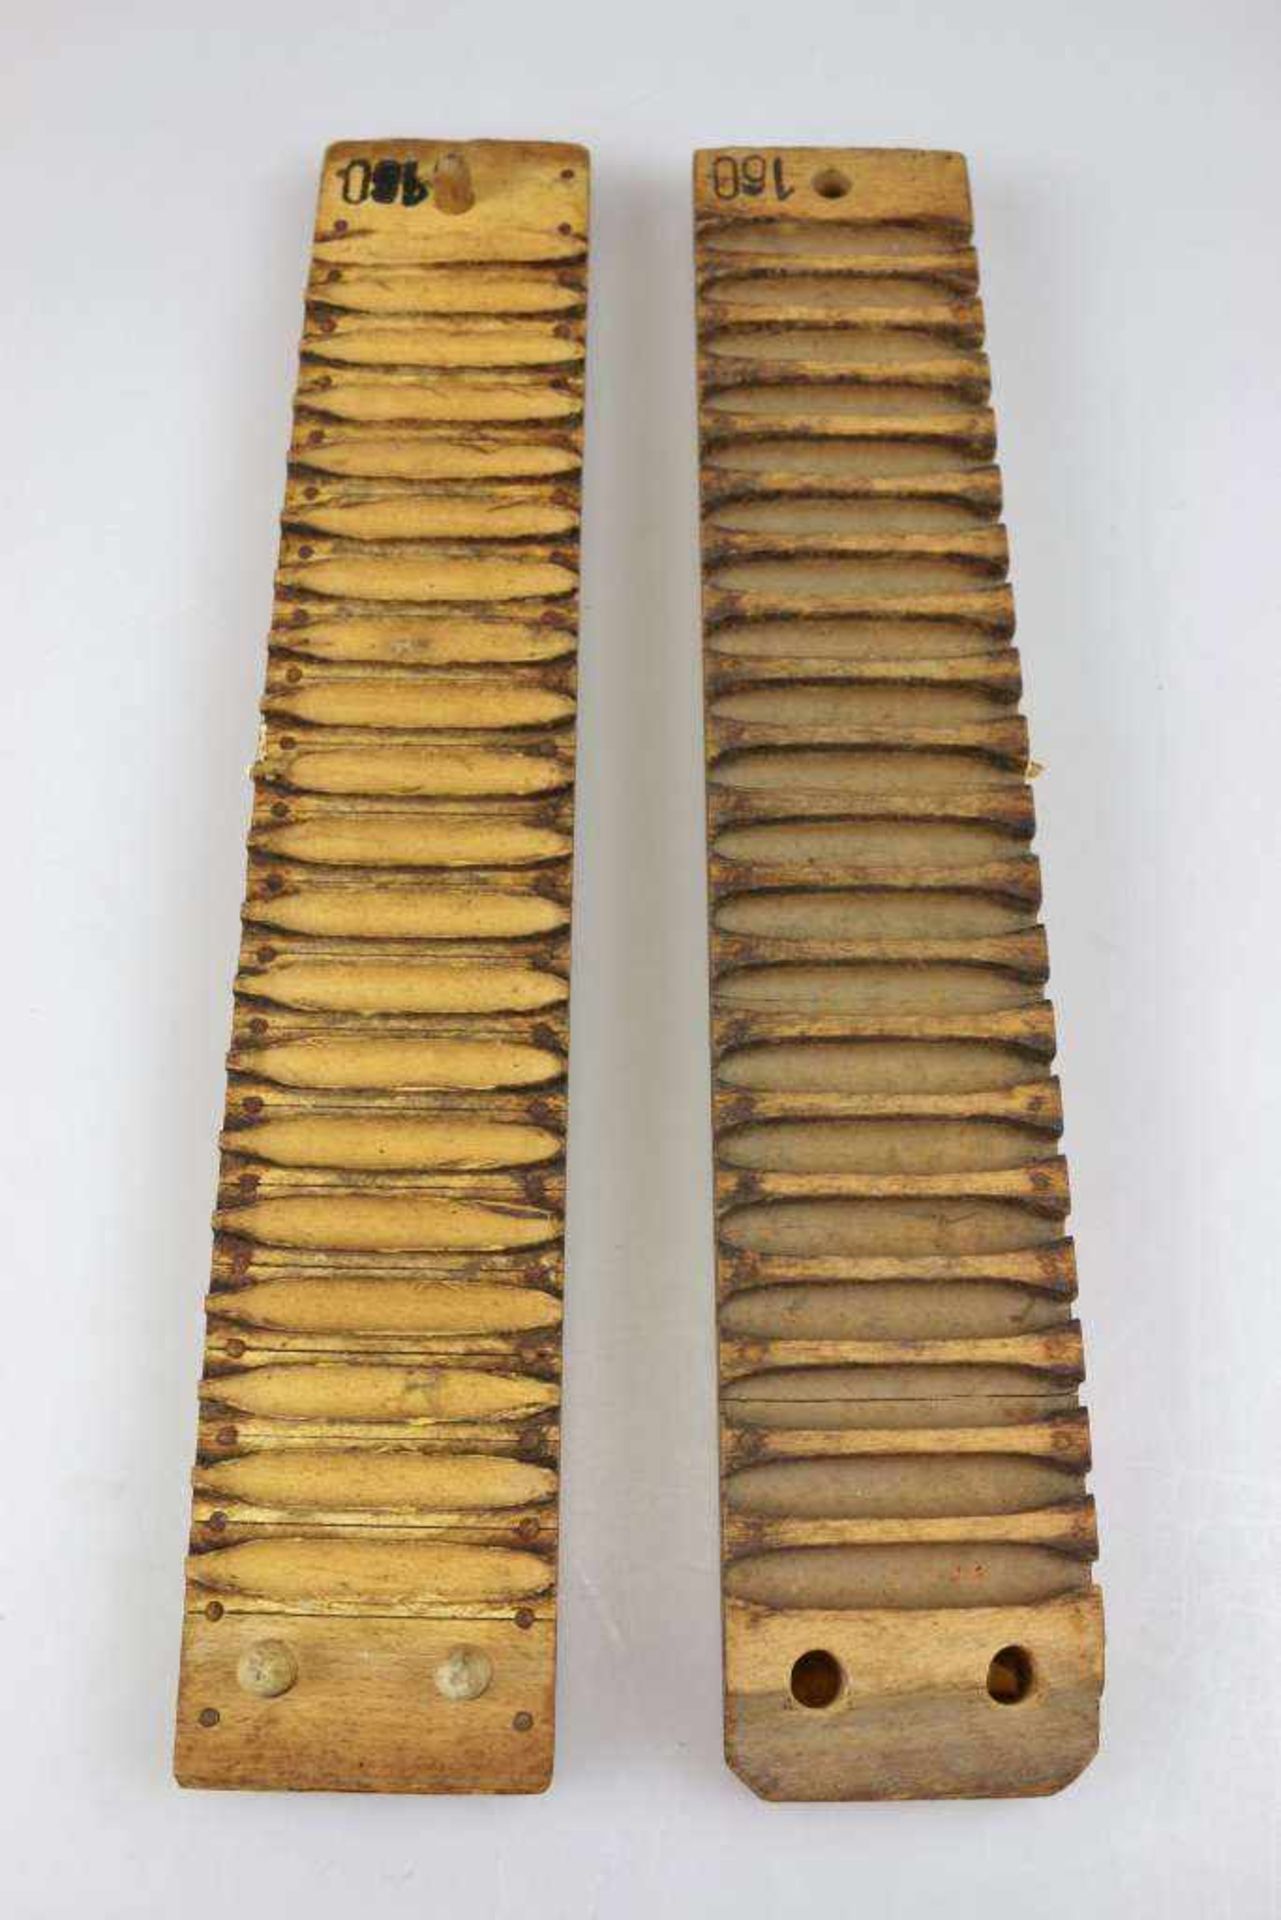 Zigarrenformer, zweiteilig aus Holz, bezeichnet: D.R.G.M, Hart & Hertel N° 25892 Schwetzingen bei - Bild 2 aus 2